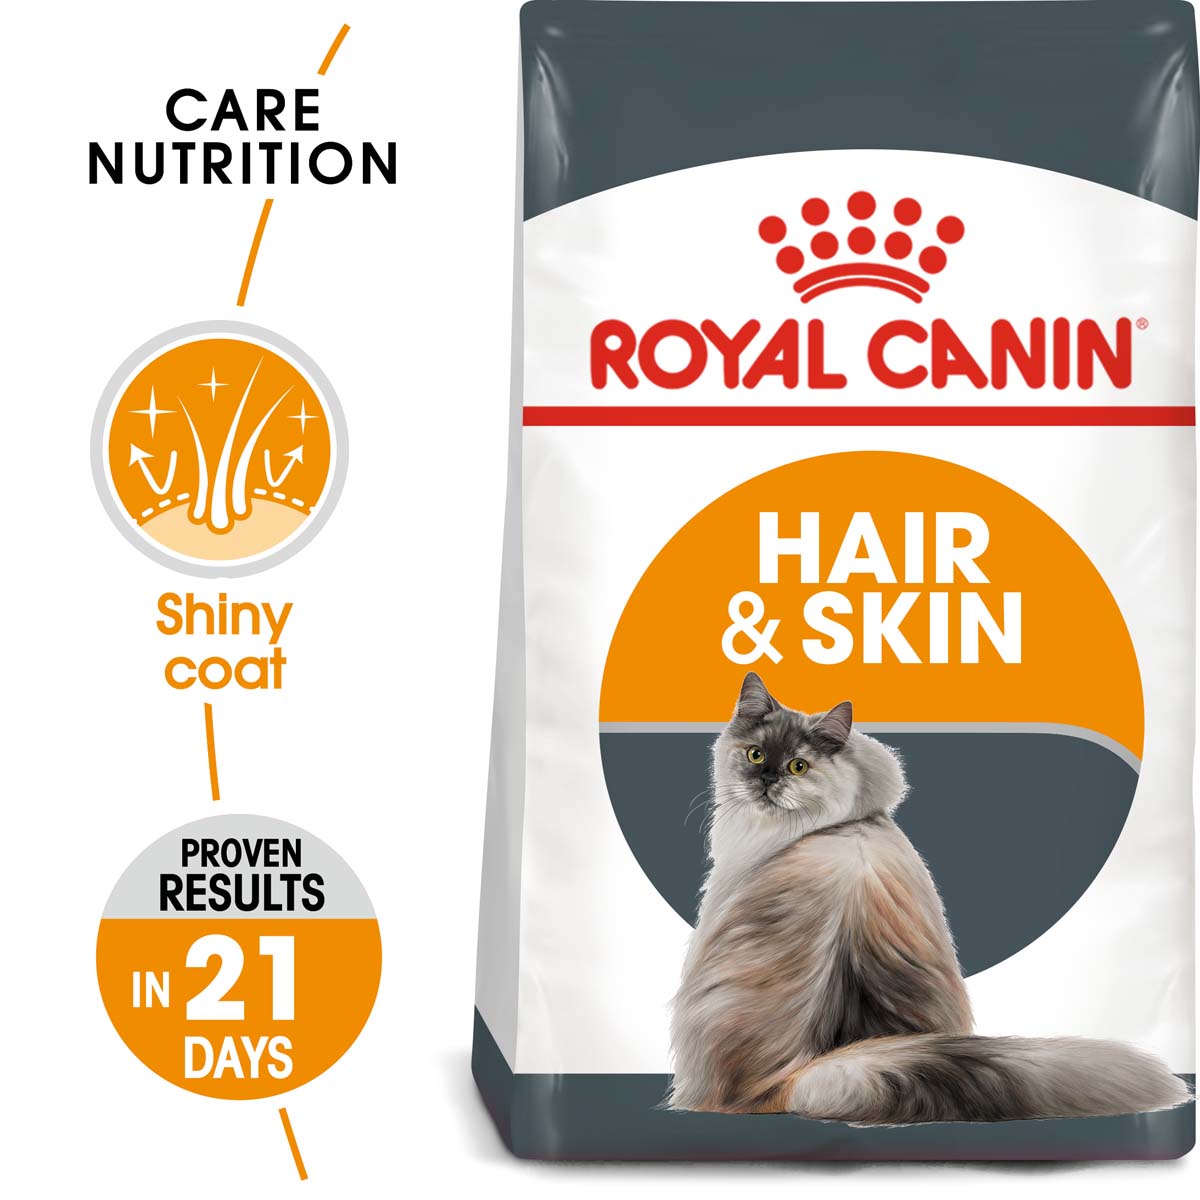 ROYAL CANIN Hair & Skin Care granule pro kočky k péči o zdravou srst 4 kg